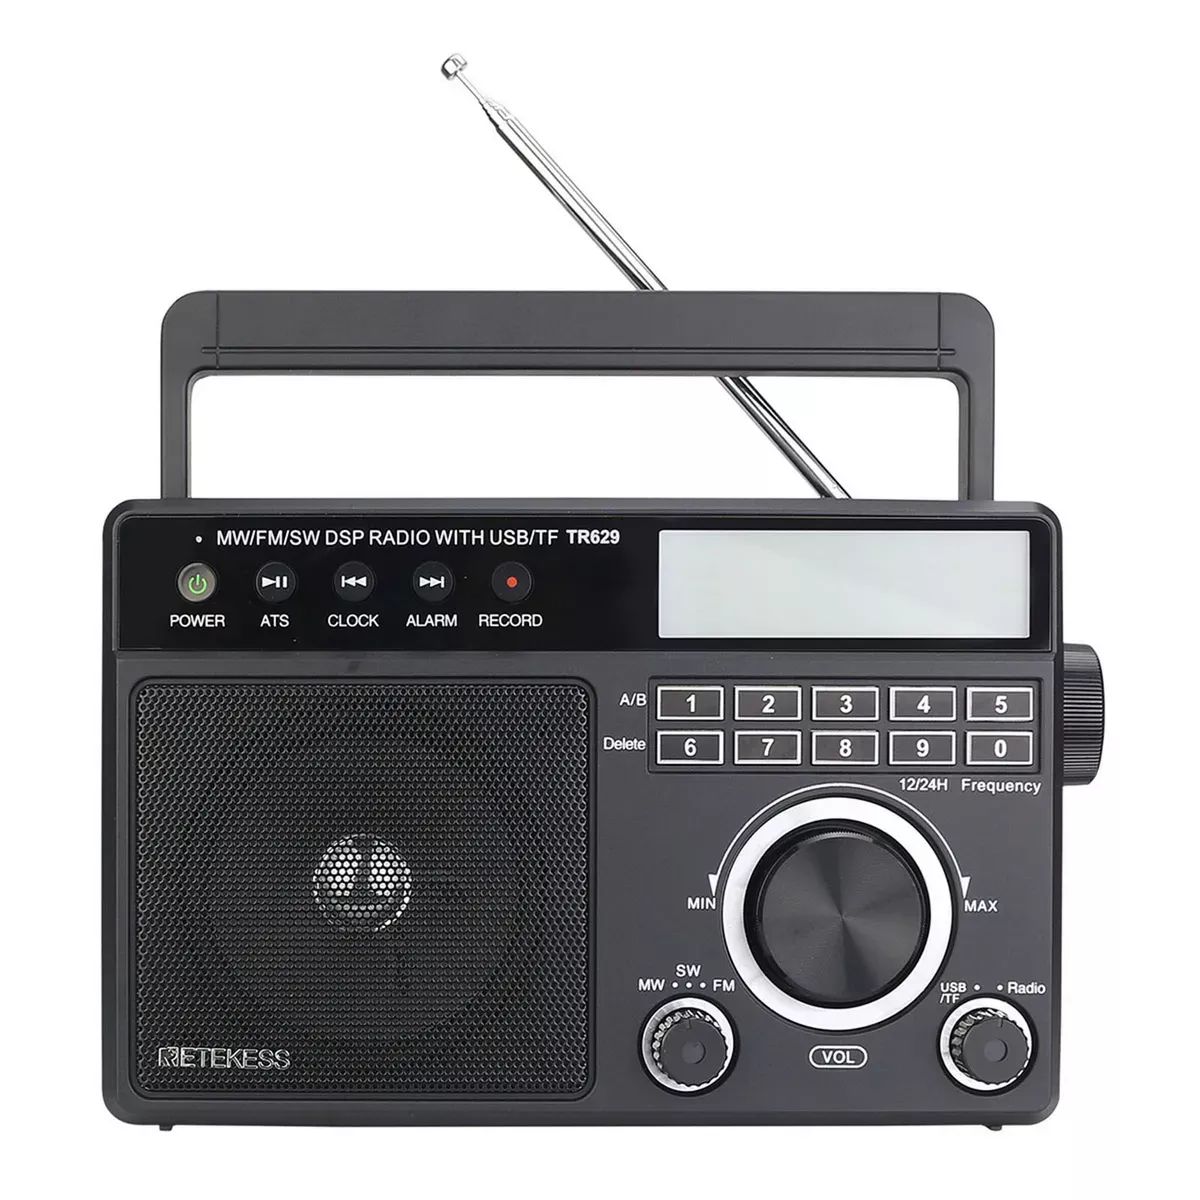 Портативное радио Retekess TR629, купить в Москве, цены в интернет-магазинах на Мегамаркет